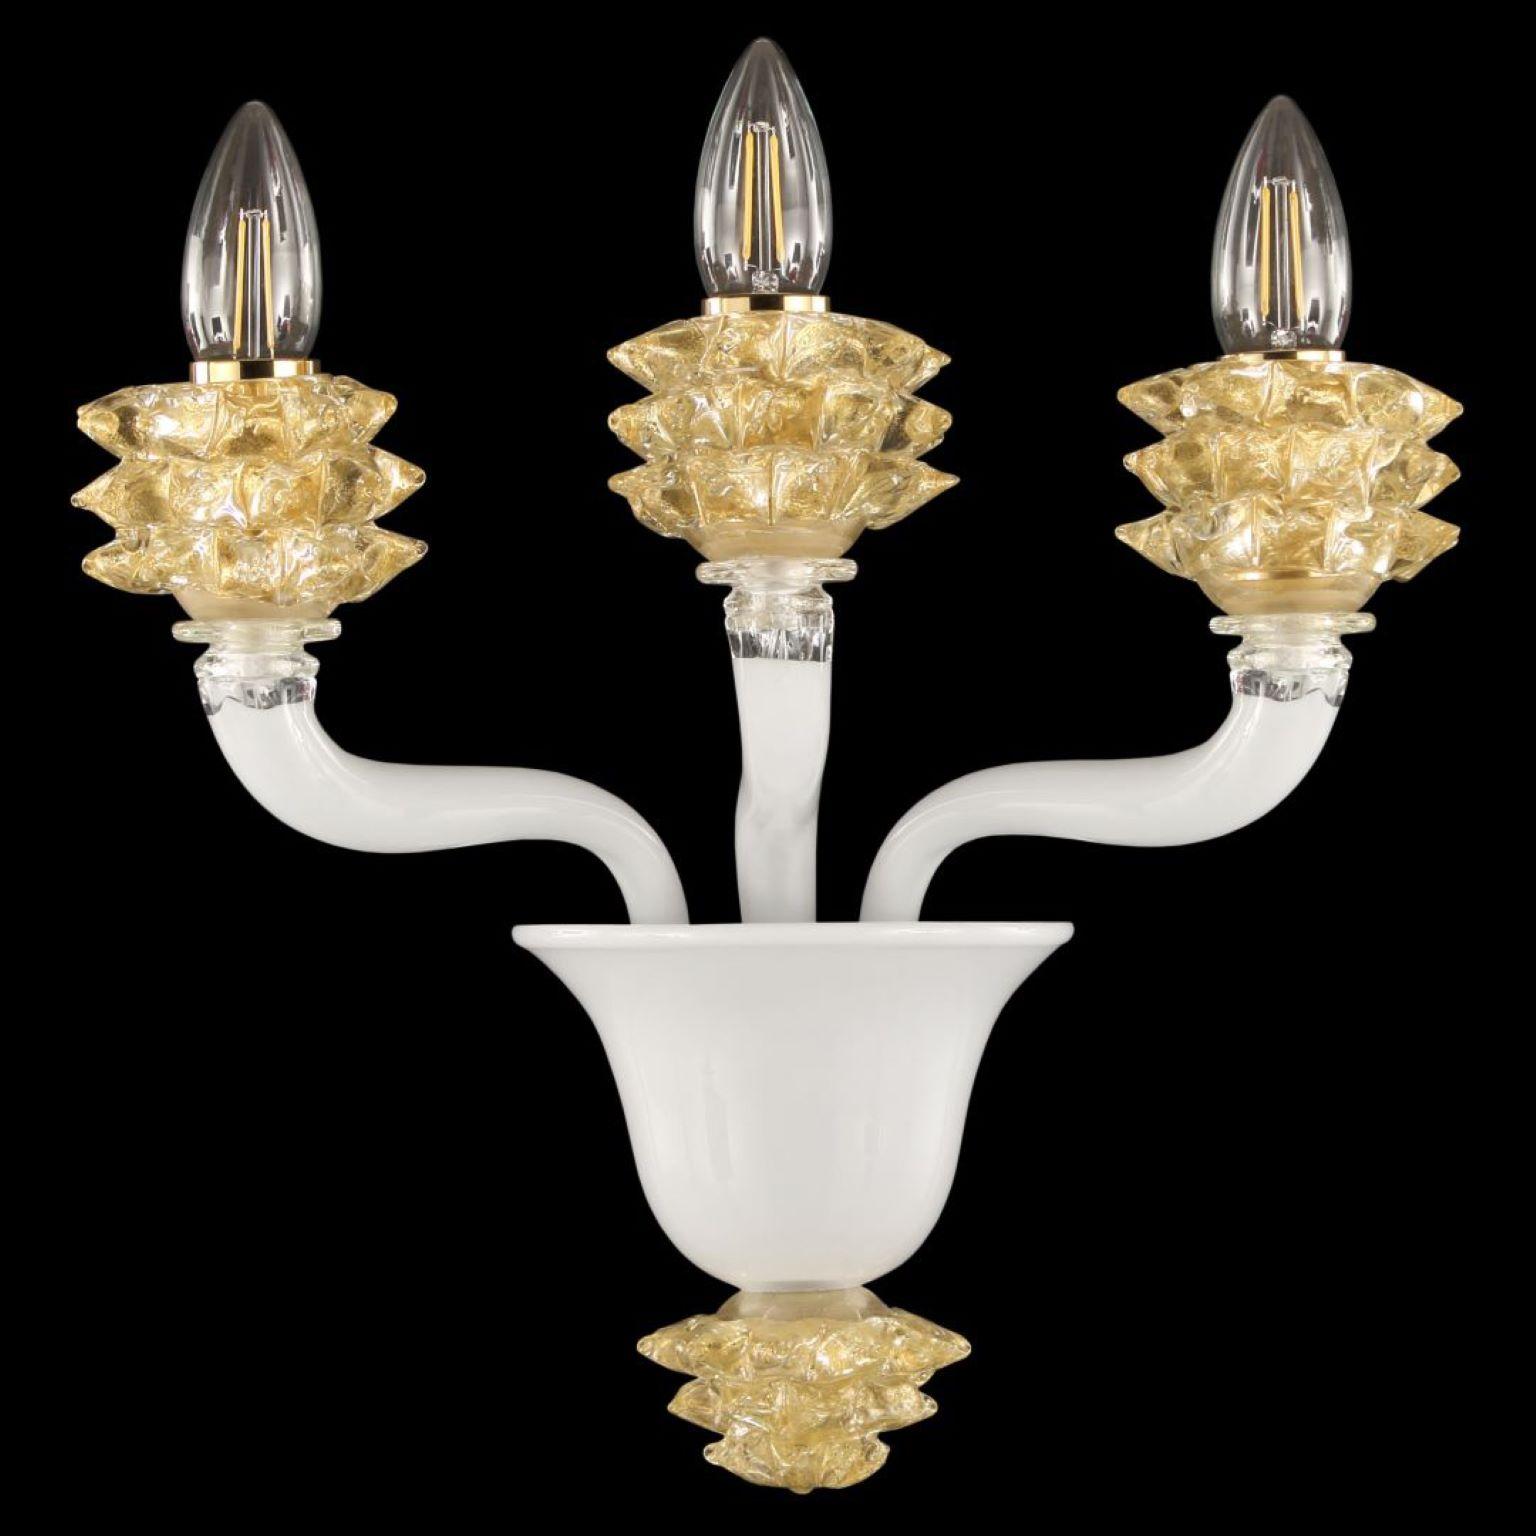 Die 3-armige Leuchte Diamante aus weißem Muranoglas mit goldenen Details ist ein wohl proportioniertes Produkt.
Das Glas der Arme ist glatt. Das Besondere an dieser Leuchte sind die Schalen, die in einem komplizierten Verfahren hergestellt werden,